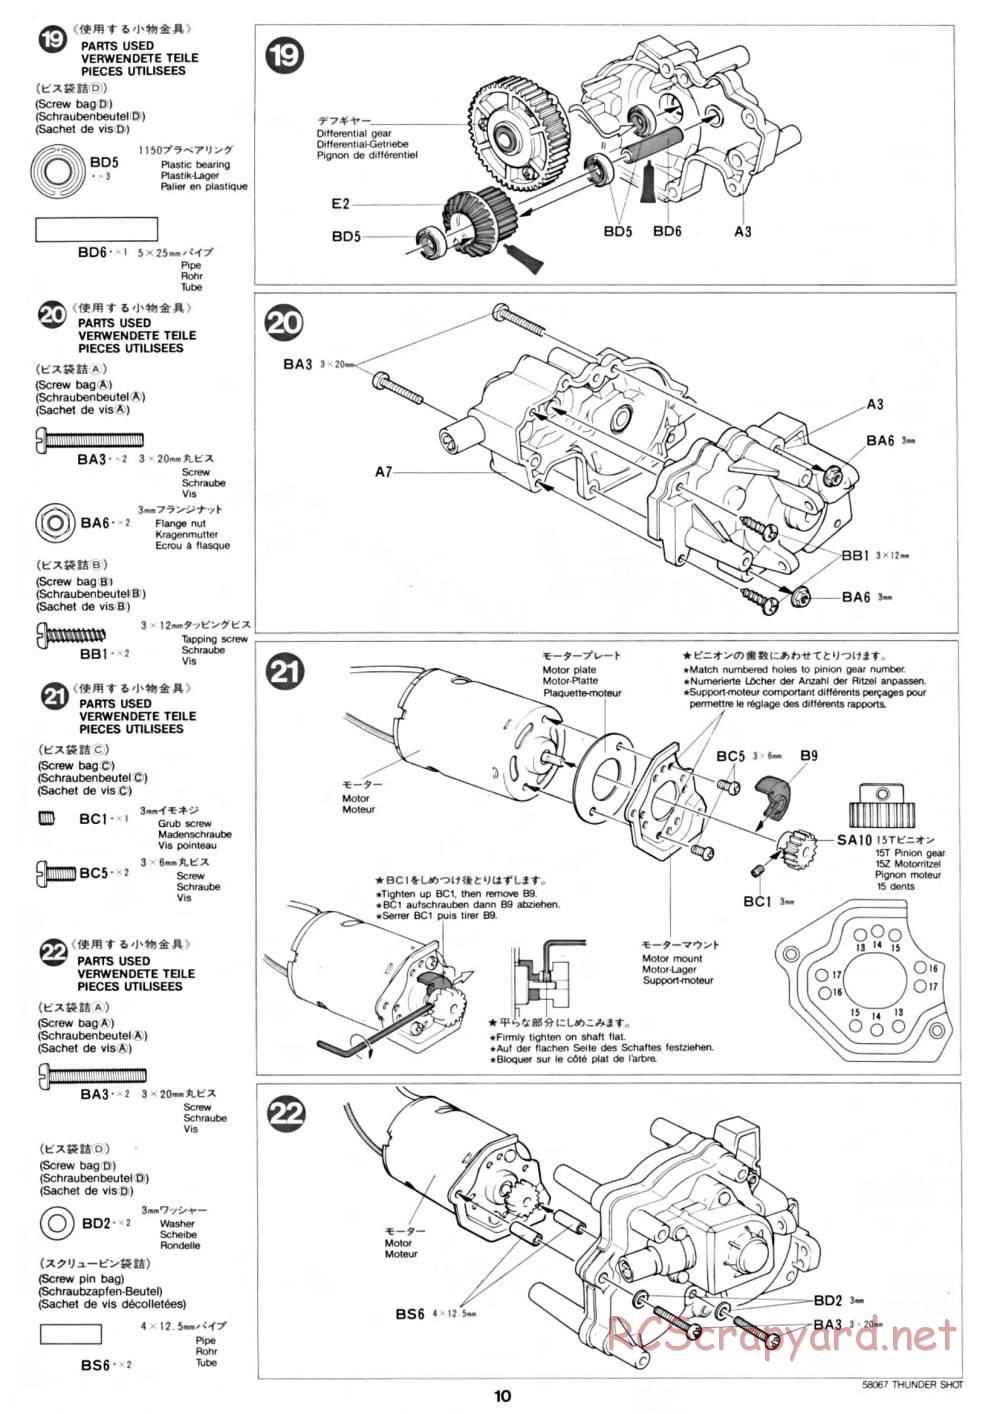 Tamiya - Thunder Shot - 58067 - Manual - Page 10